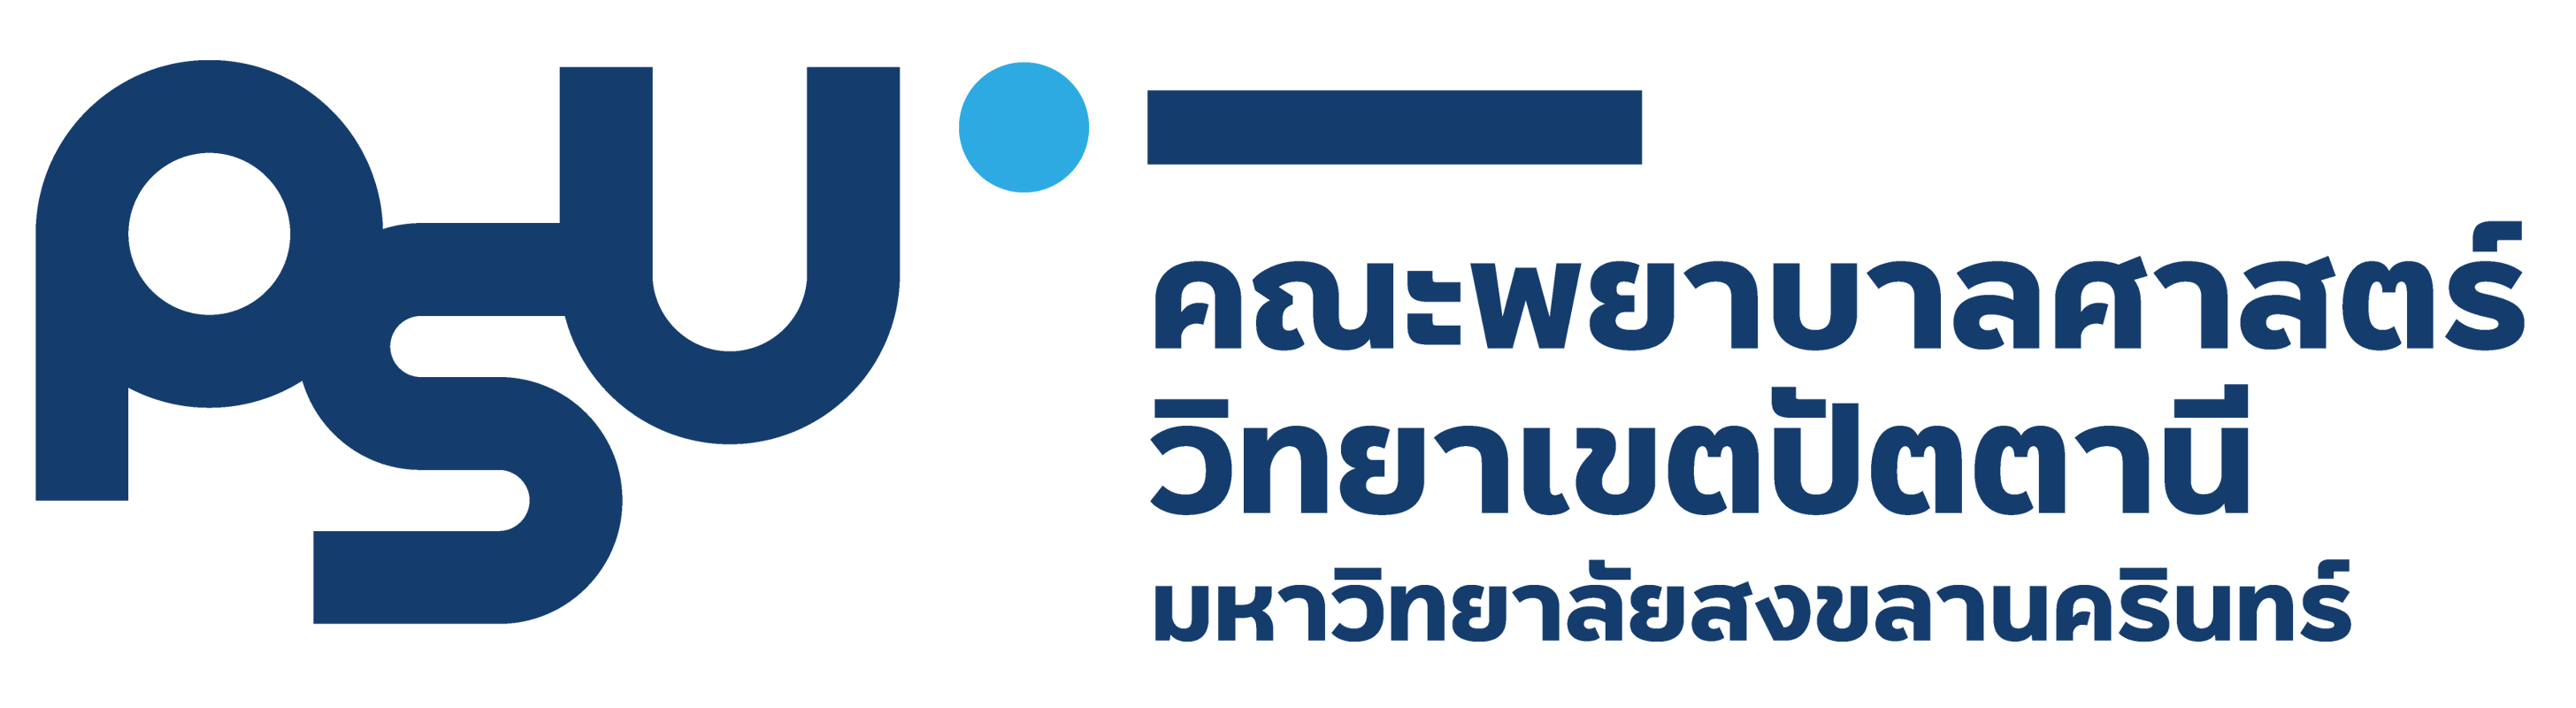 nurpnpsu logo